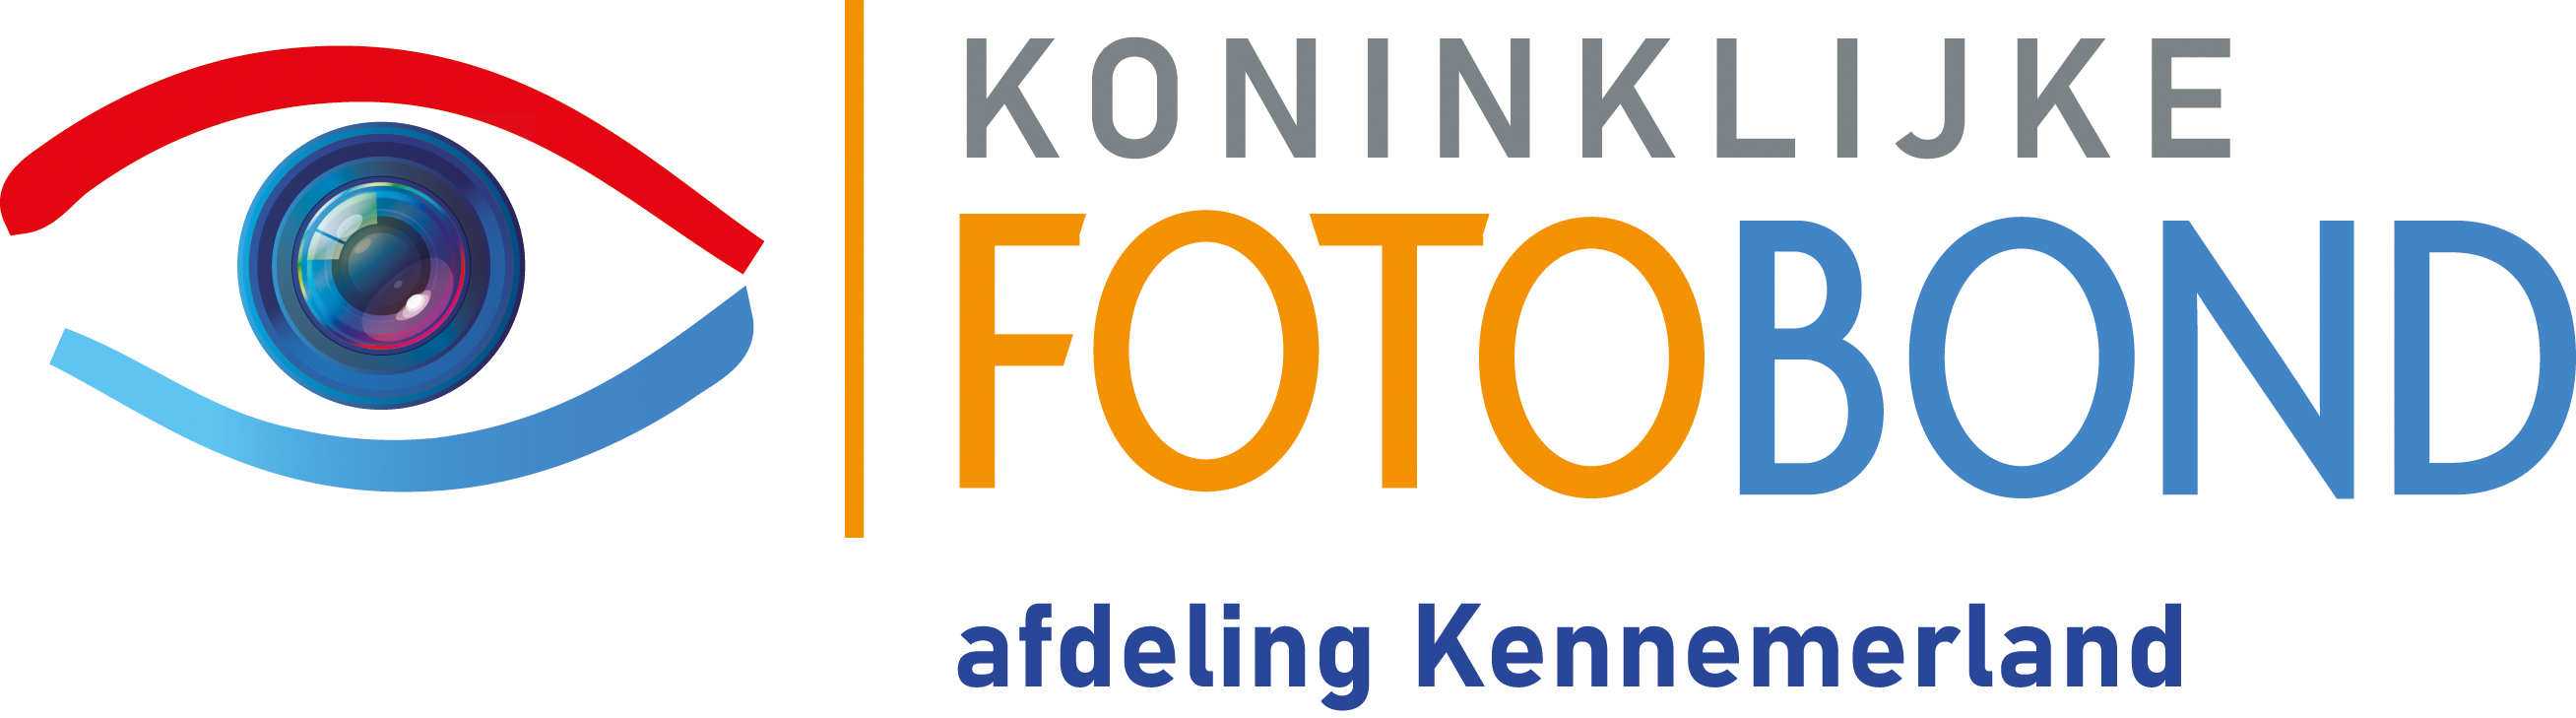 Logo Fotobond afdeling Kennemerland RGB.jpg